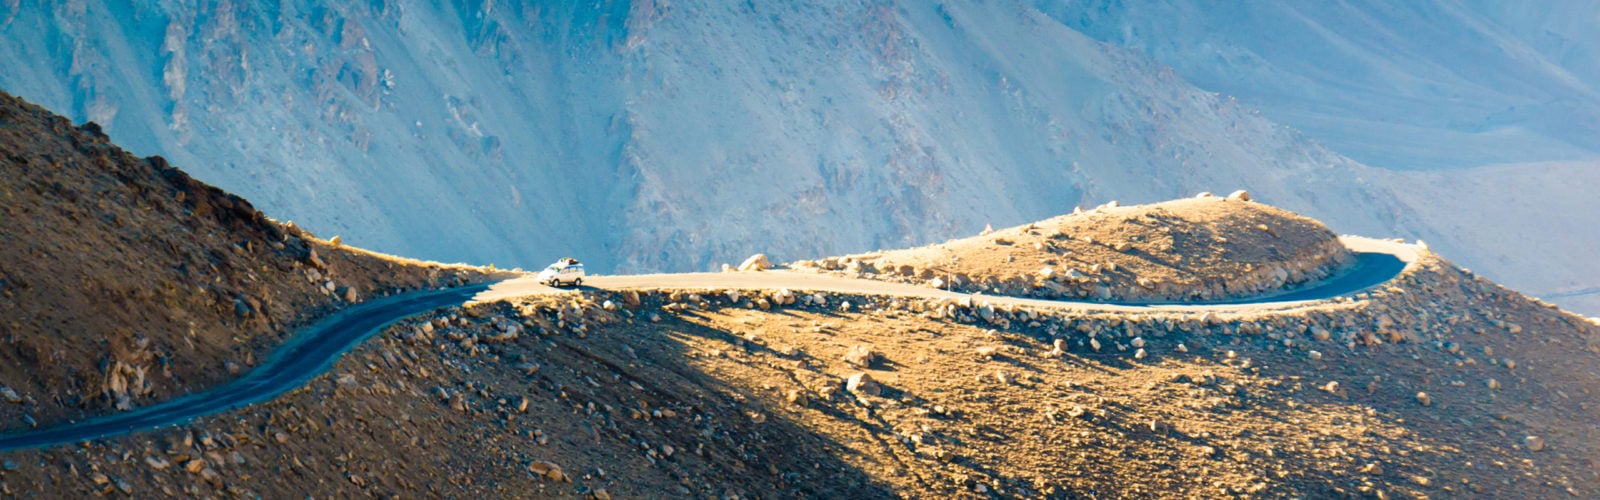 ladakh-landscape-road